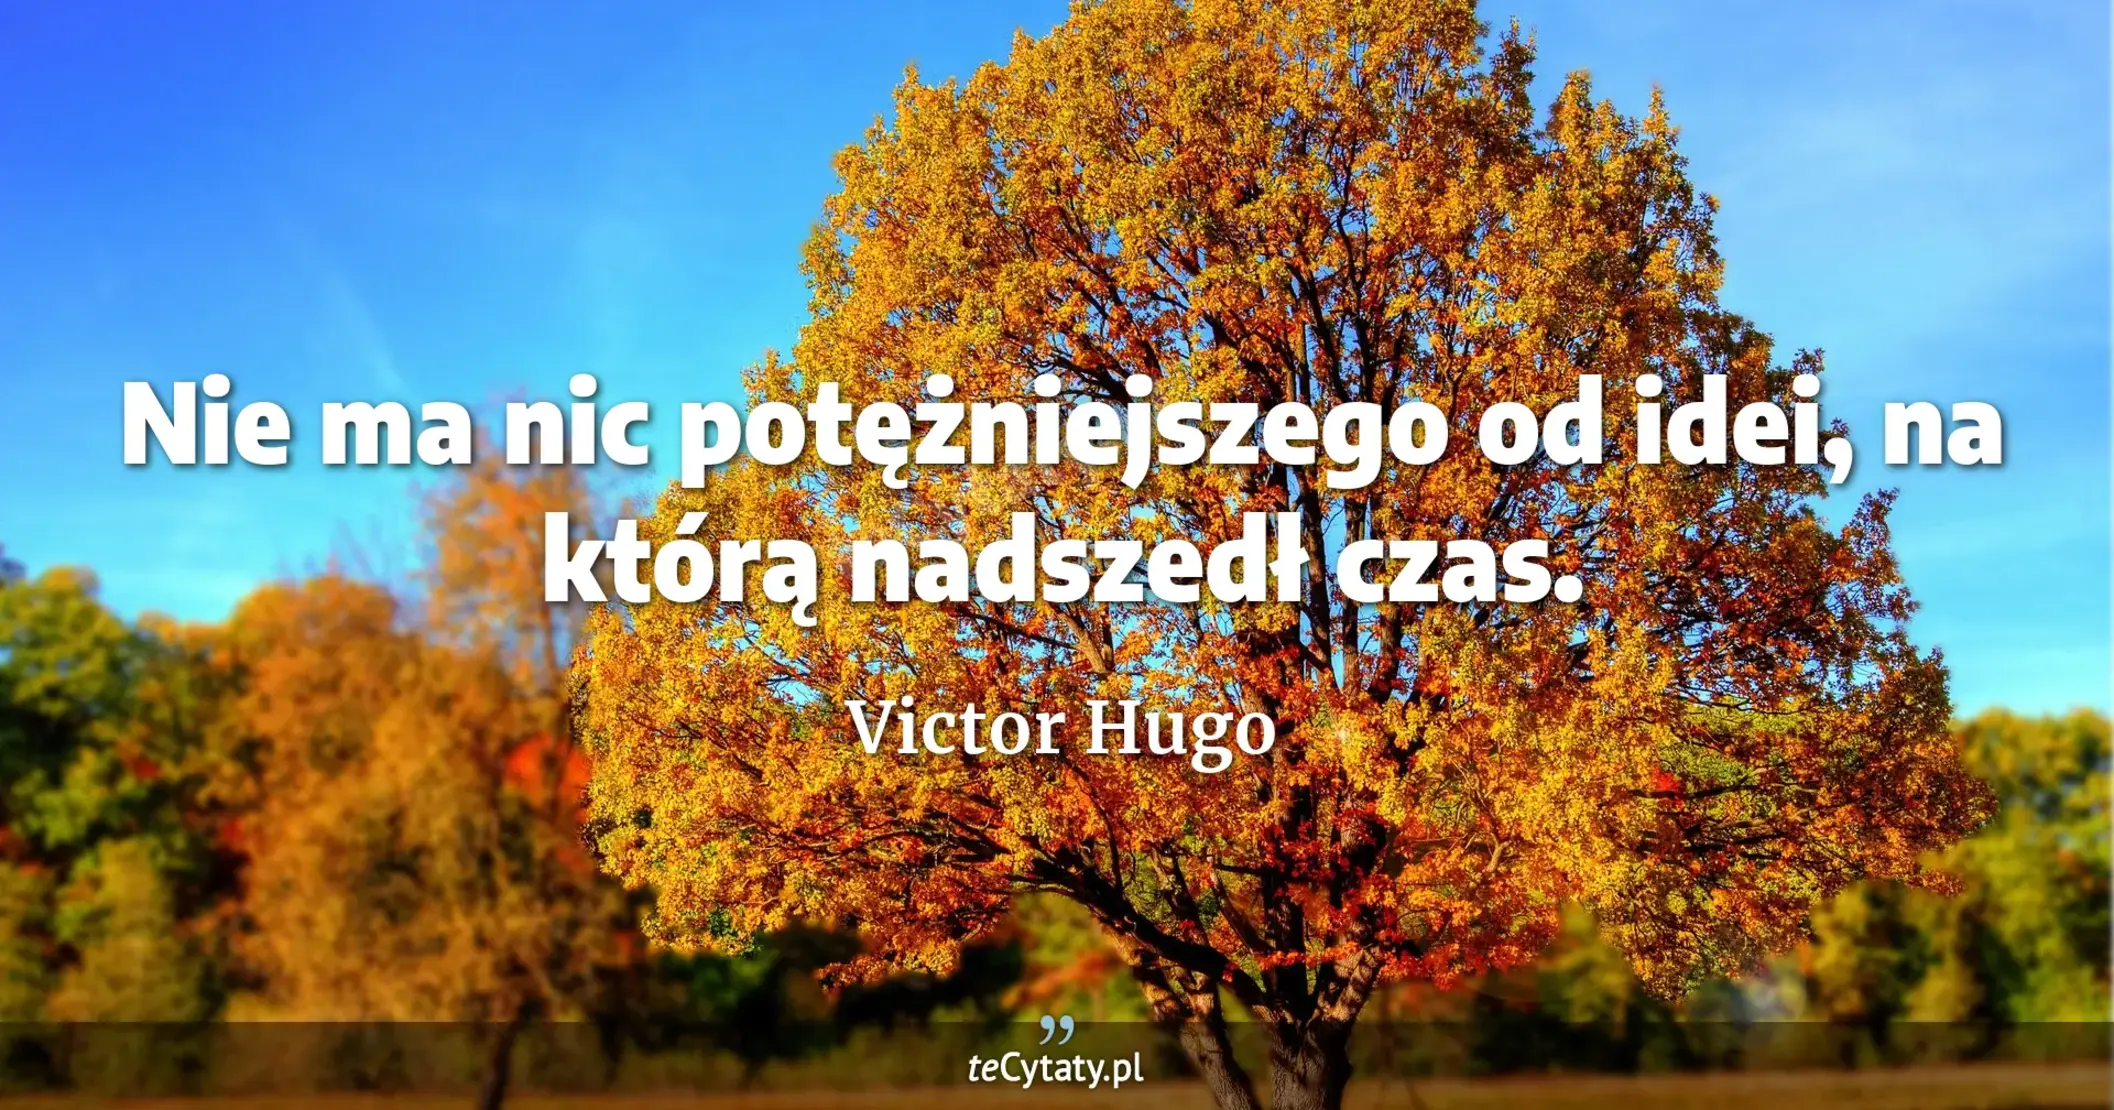 Nie ma nic potężniejszego od idei, na którą nadszedł czas. - Victor Hugo